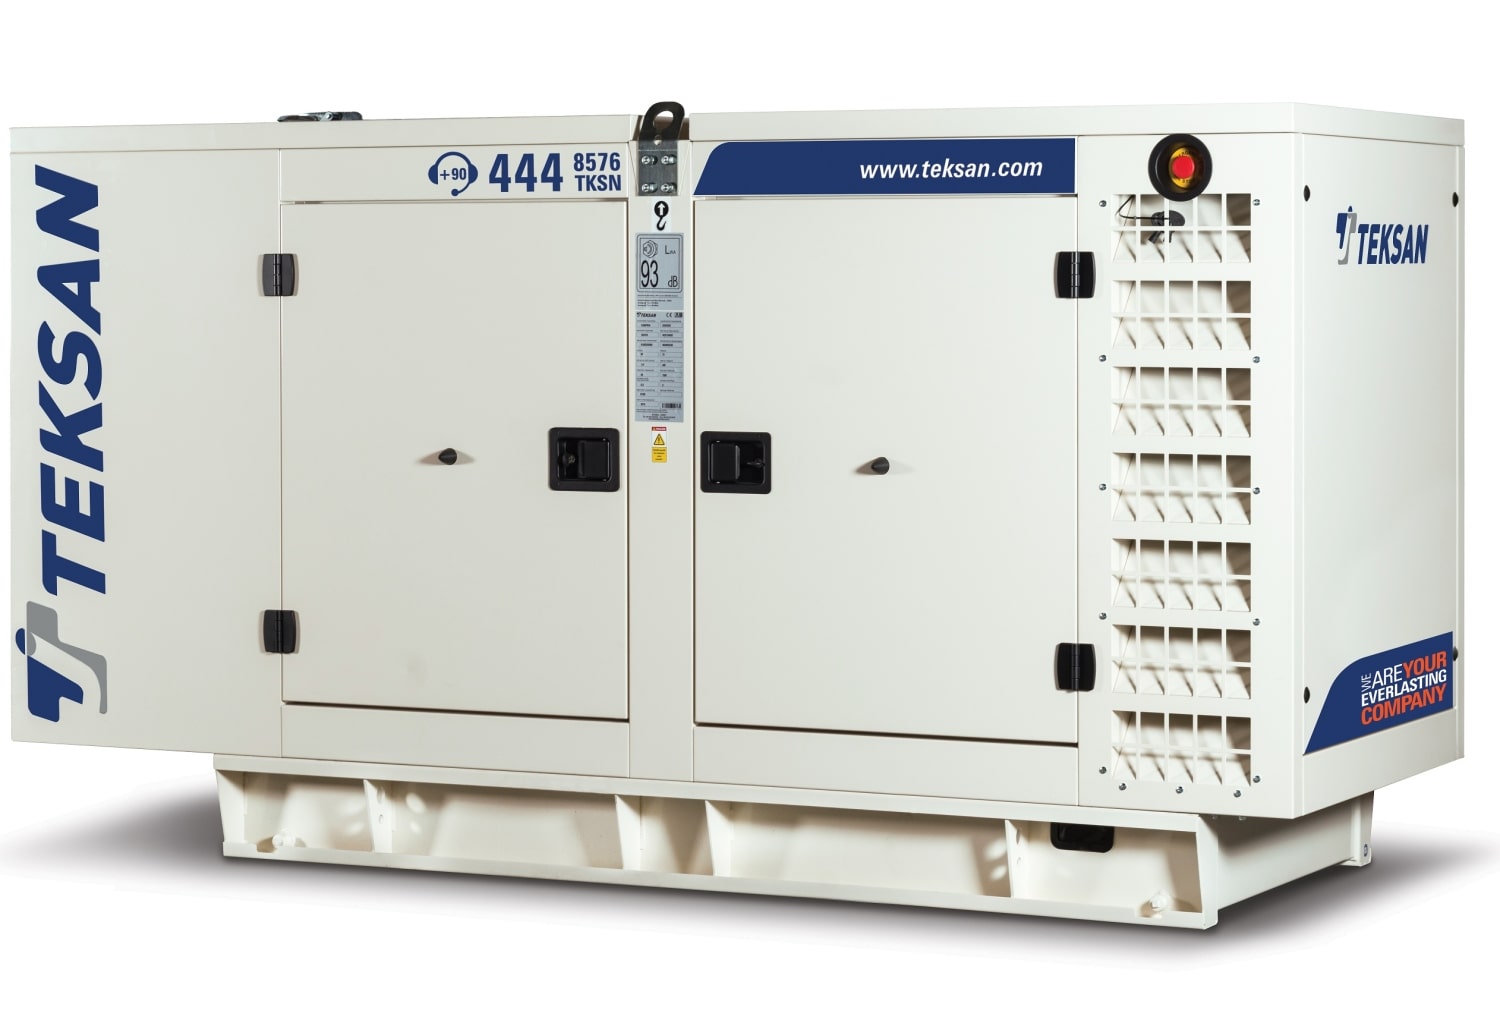  генератор Teksan TJ220DW5C в кожухе  от поставщика — Teksan